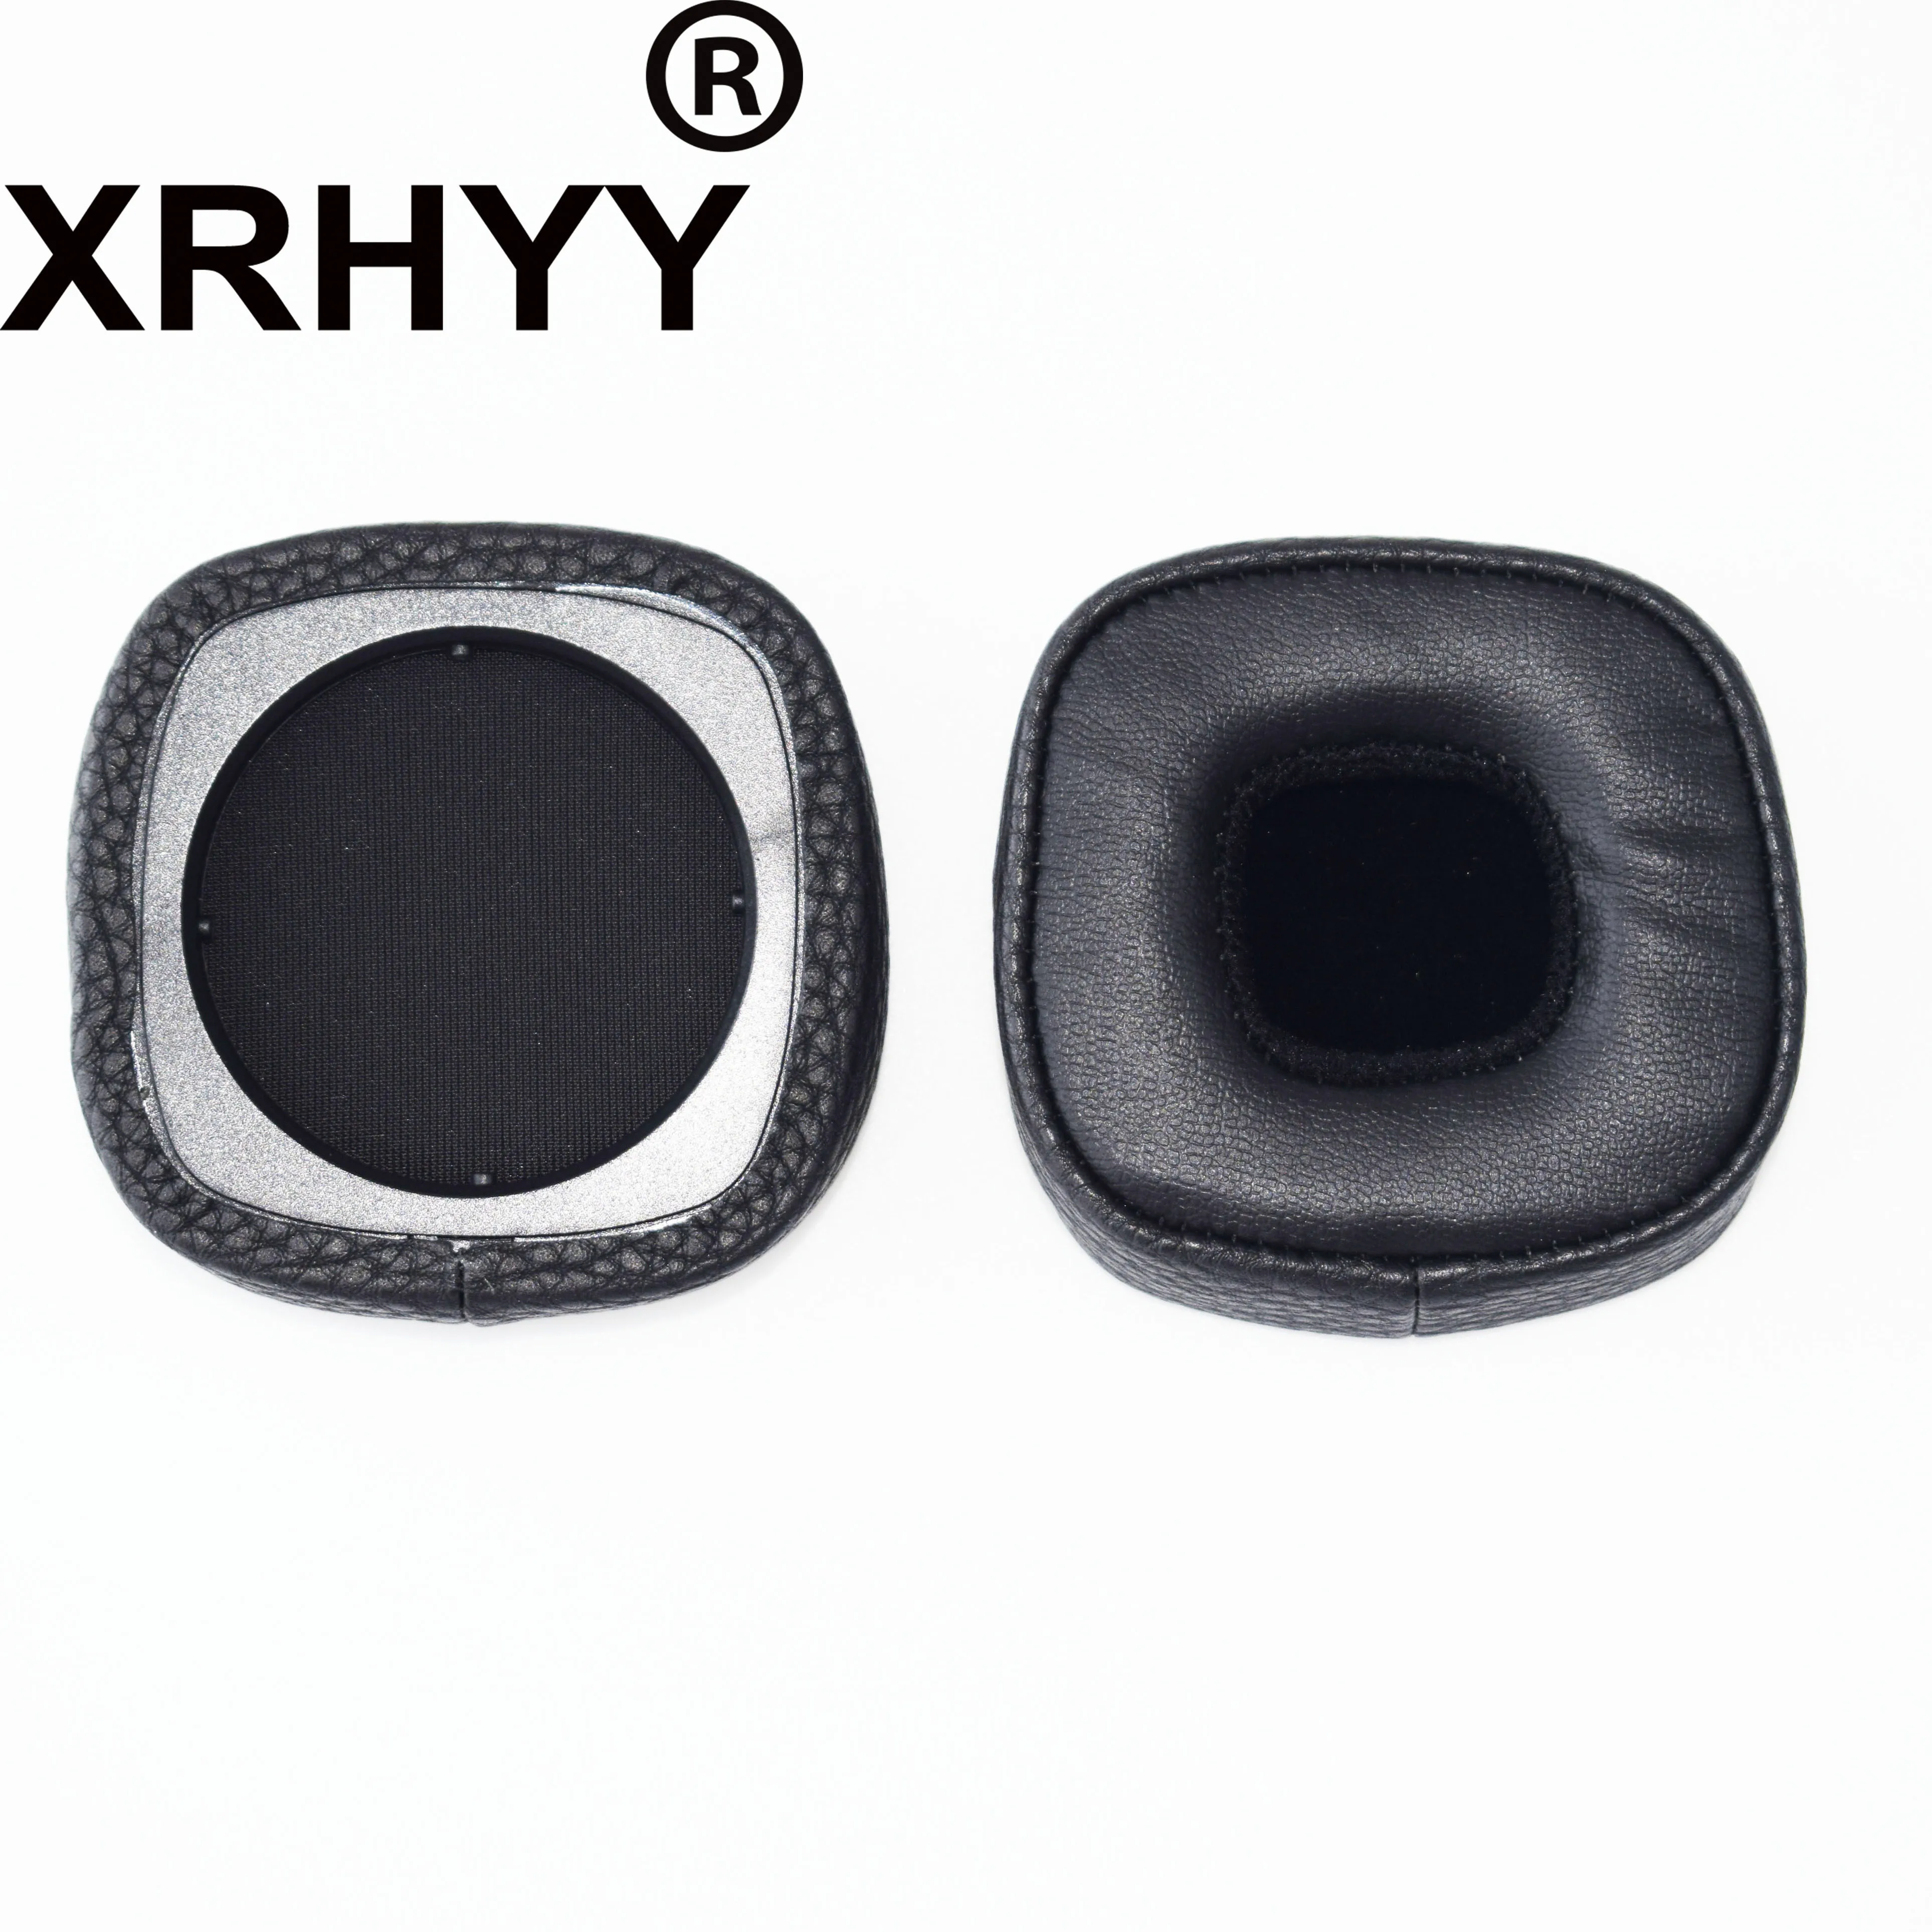 XRHYY 1 пара, черные сменные амбушюры из искусственной кожи, накладные амбушюры для наушников Marshall Major 3